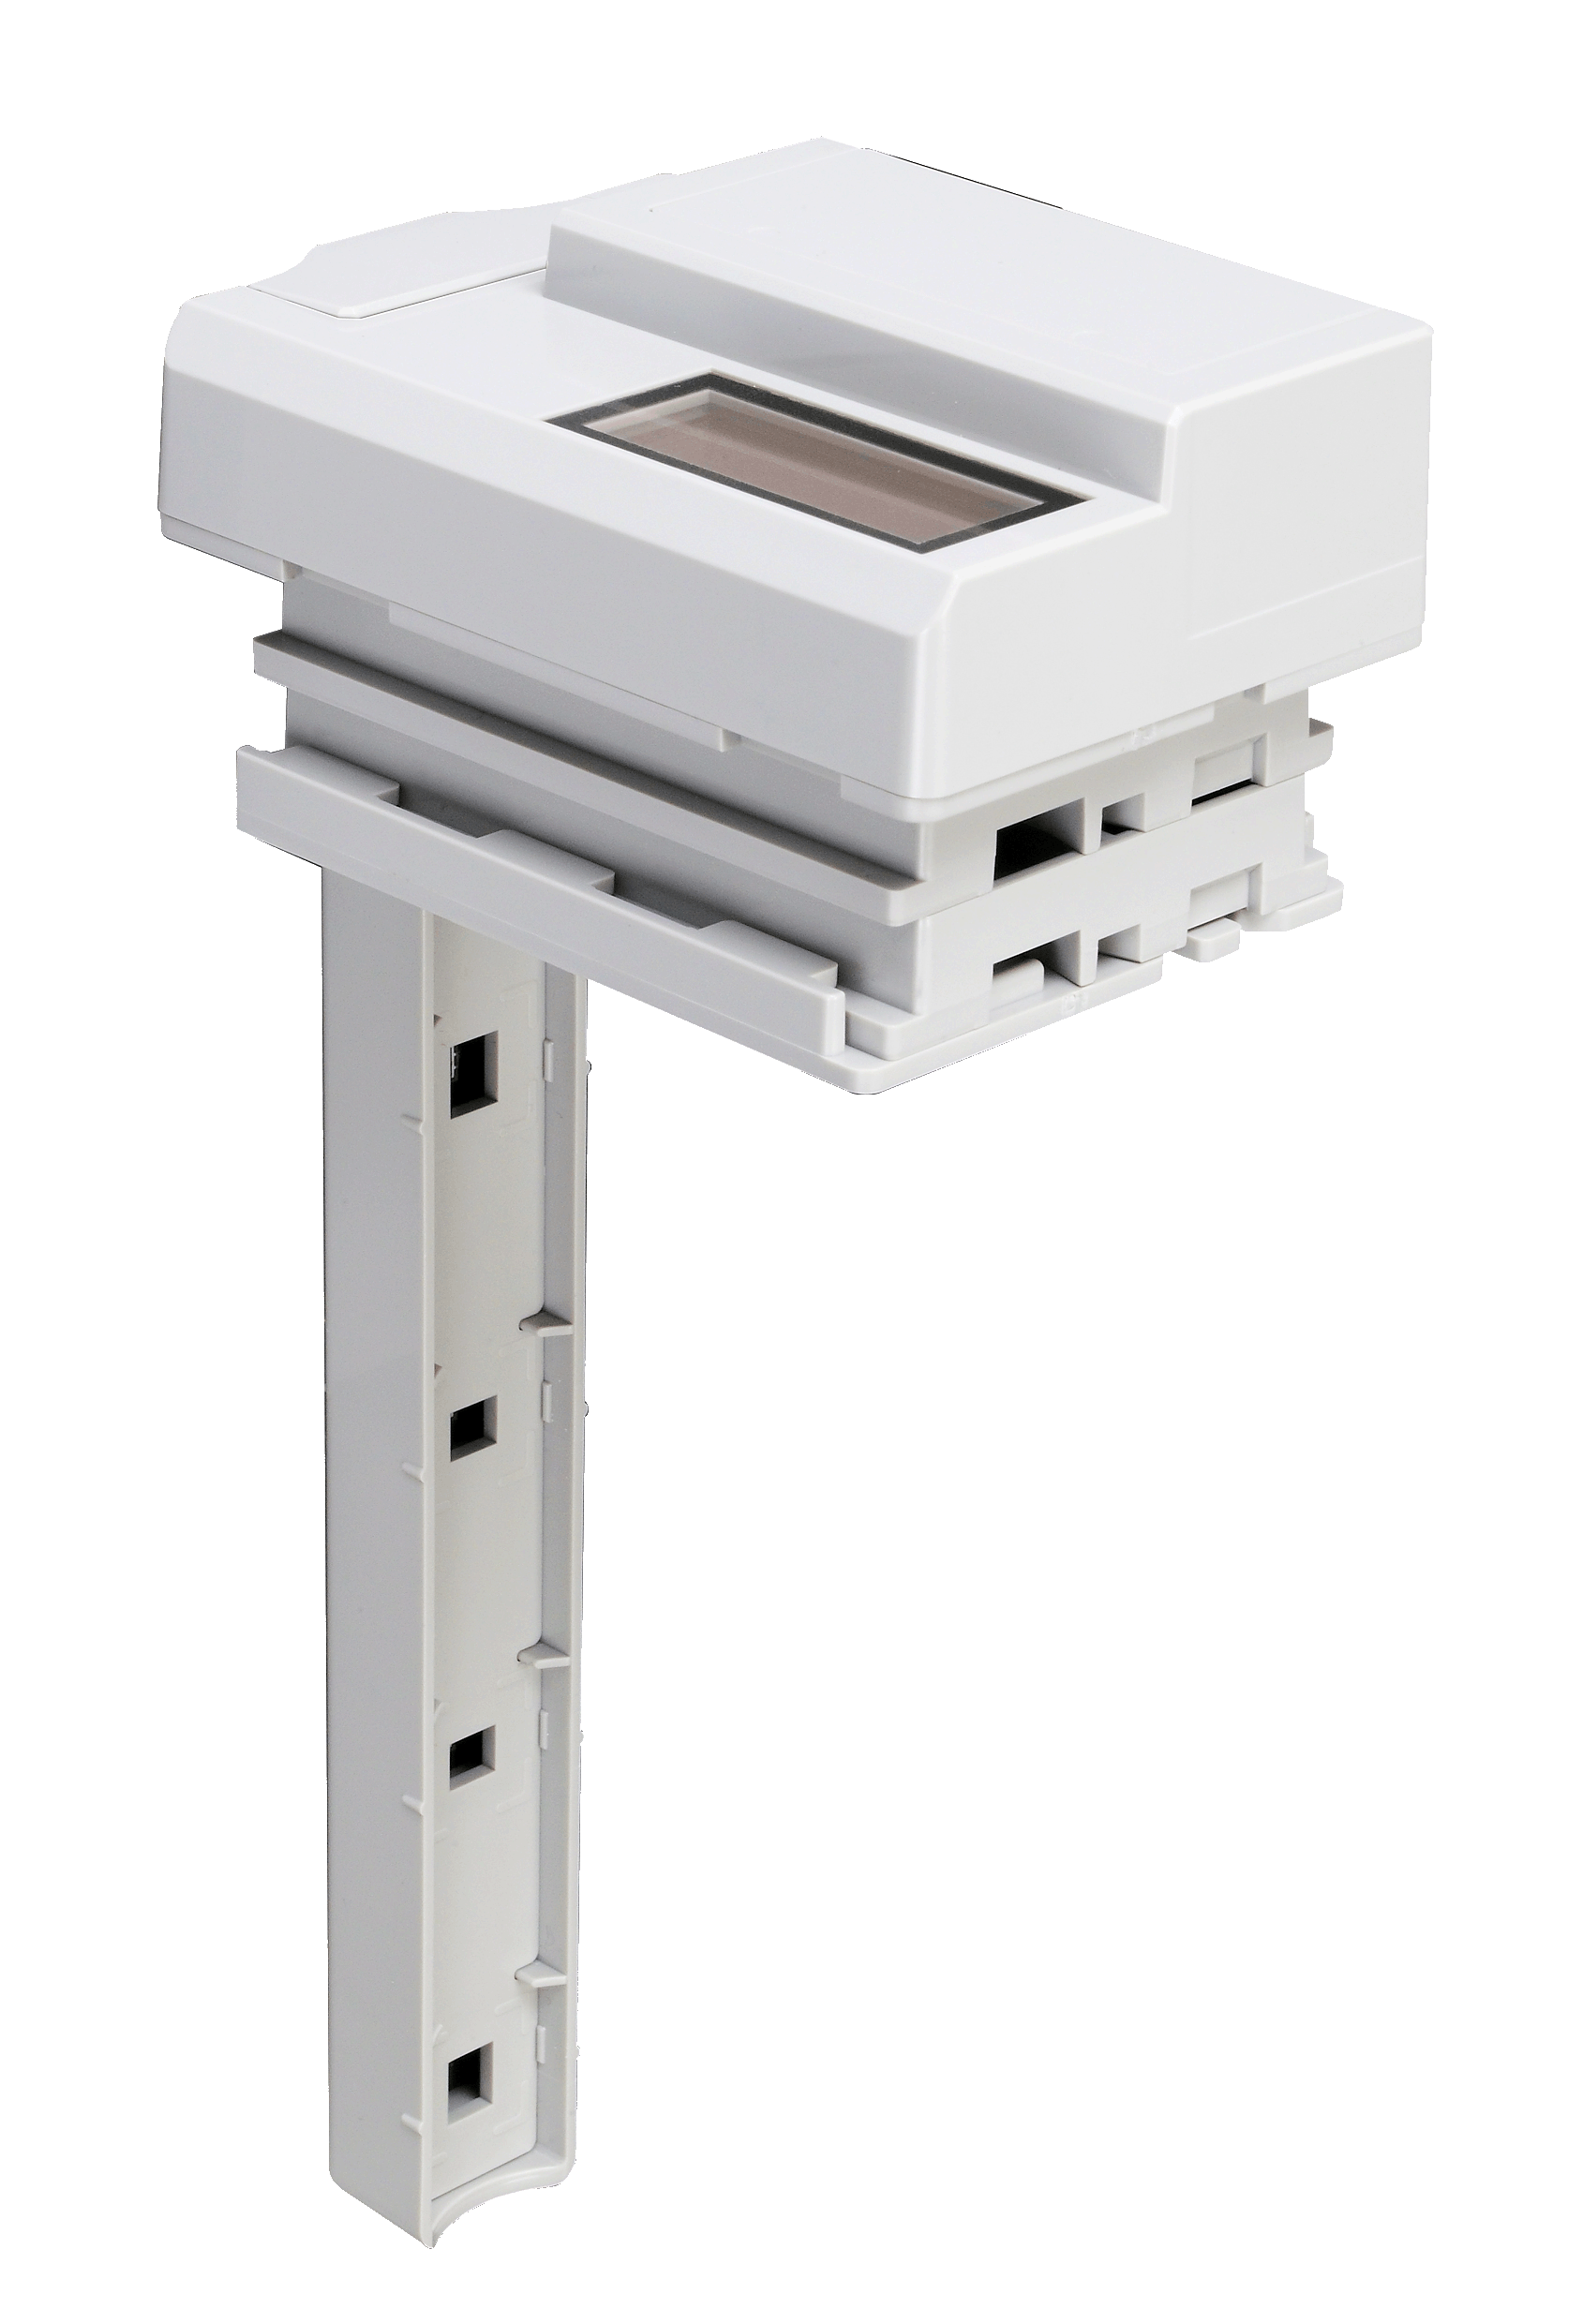 XJNE3-BP4009+USB400Jのオンラインショップ専用製品です